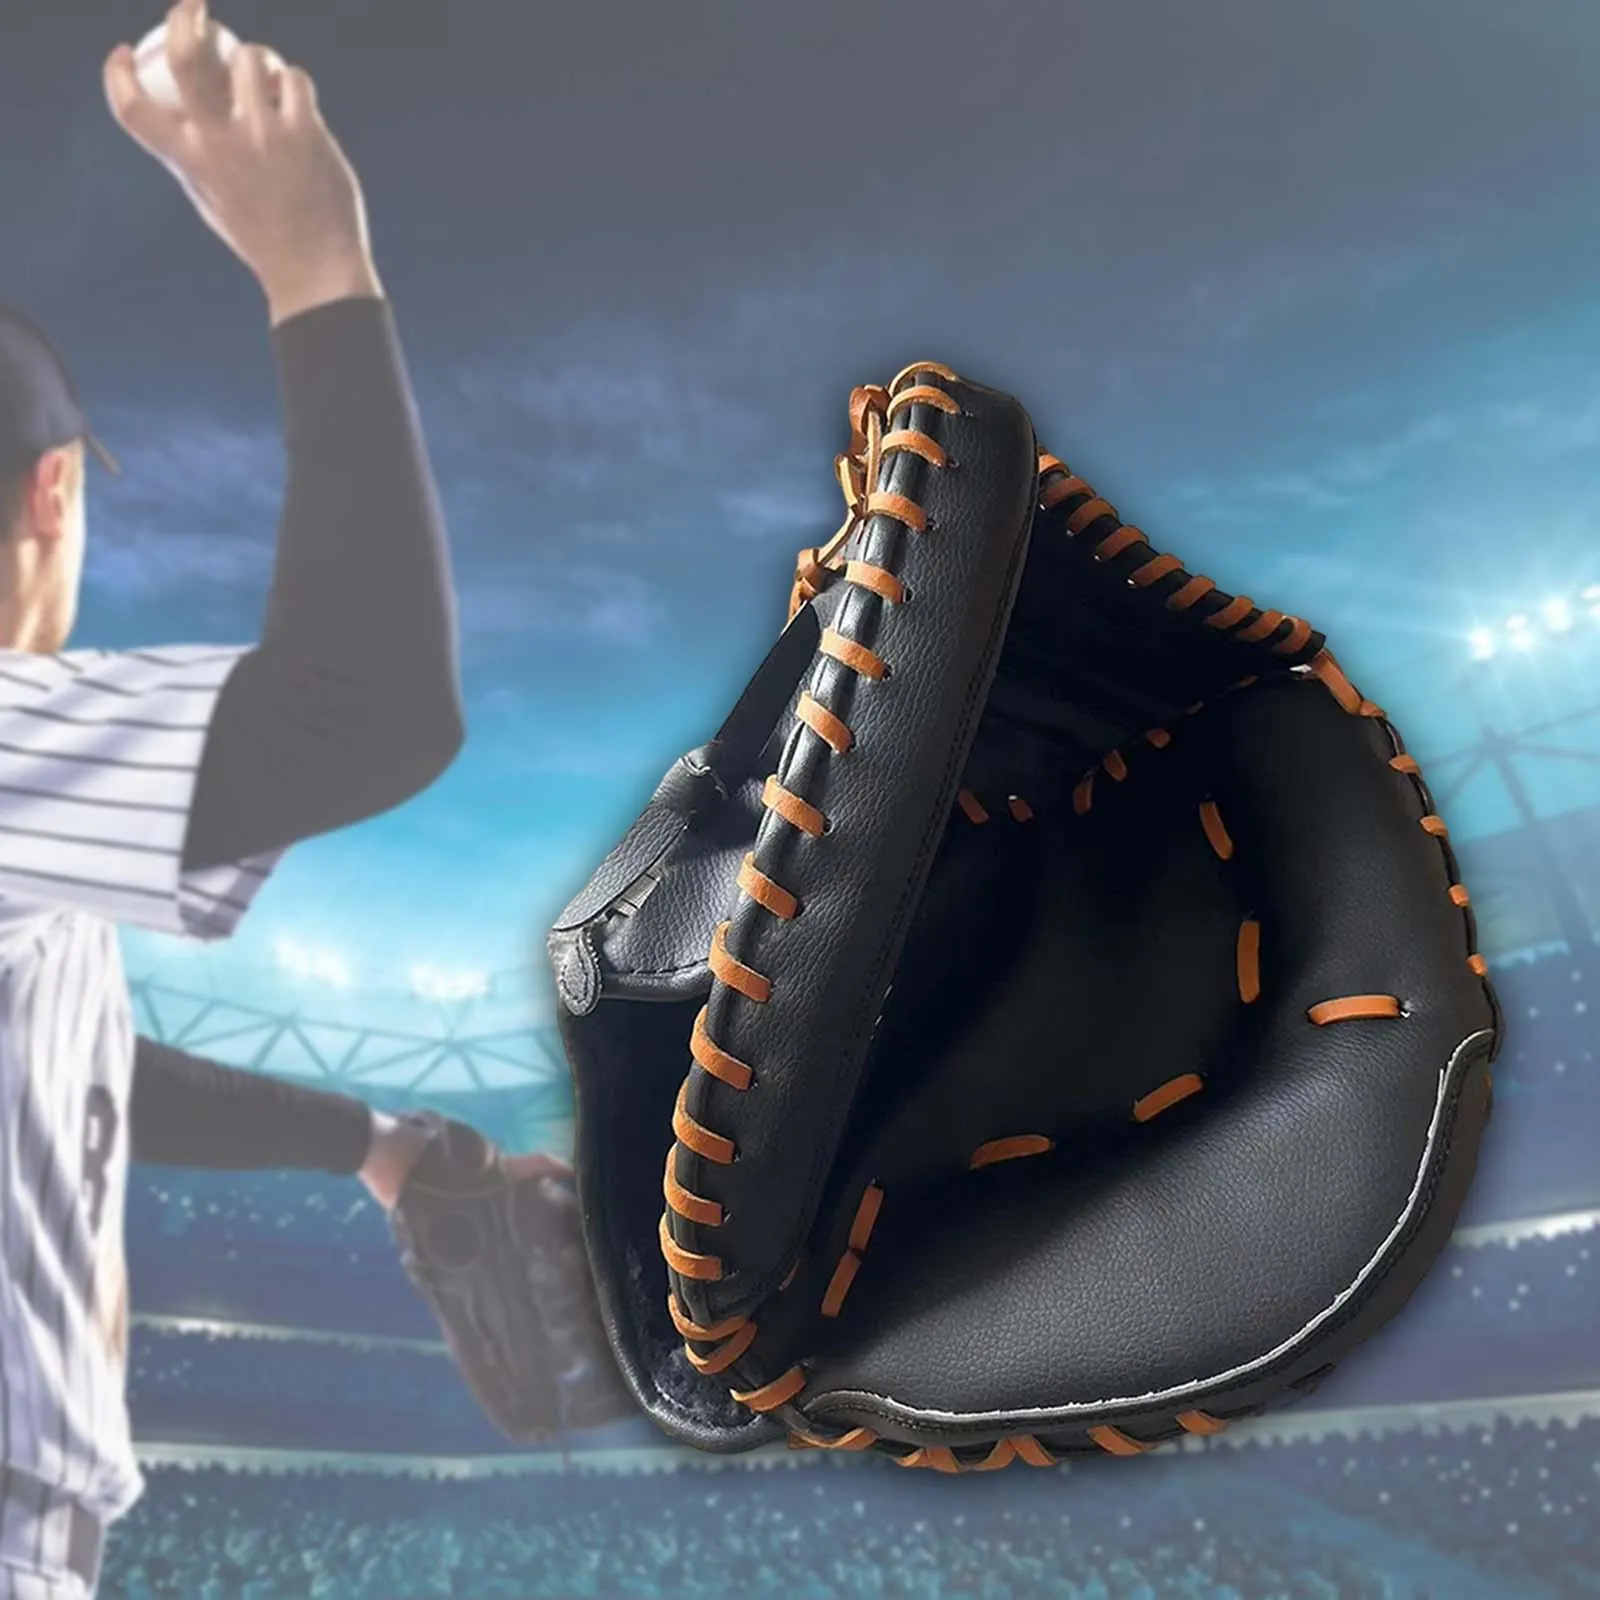 Gants de baseball Teeball Glove Sport Gants de frappe Gants Flexibilité Baseball Softball Mitt Outfield Gants Pu Catcher Mitt